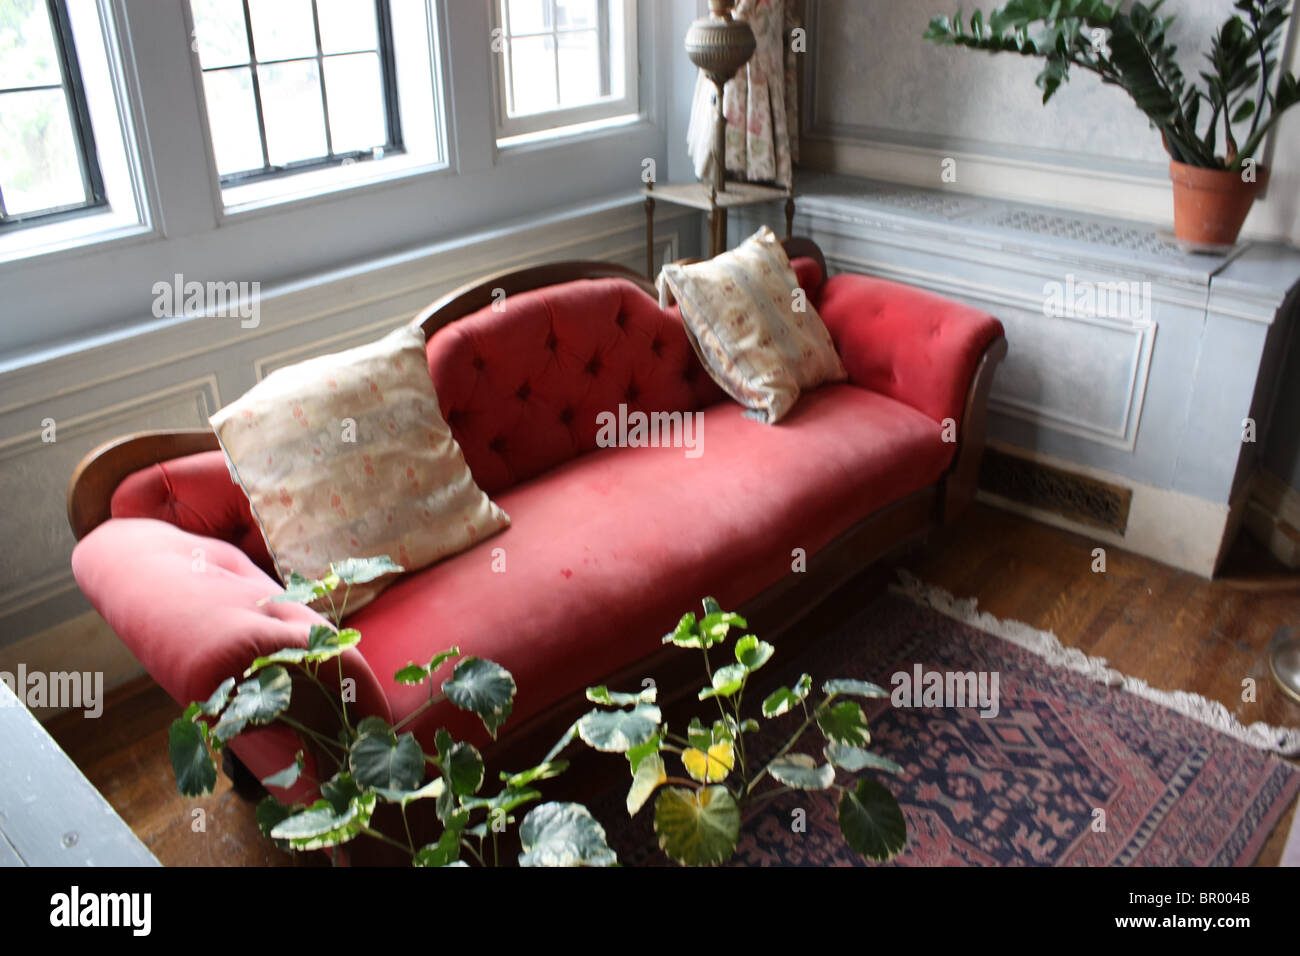 Vecchio retro vintage divano rosso luce della finestra Foto Stock